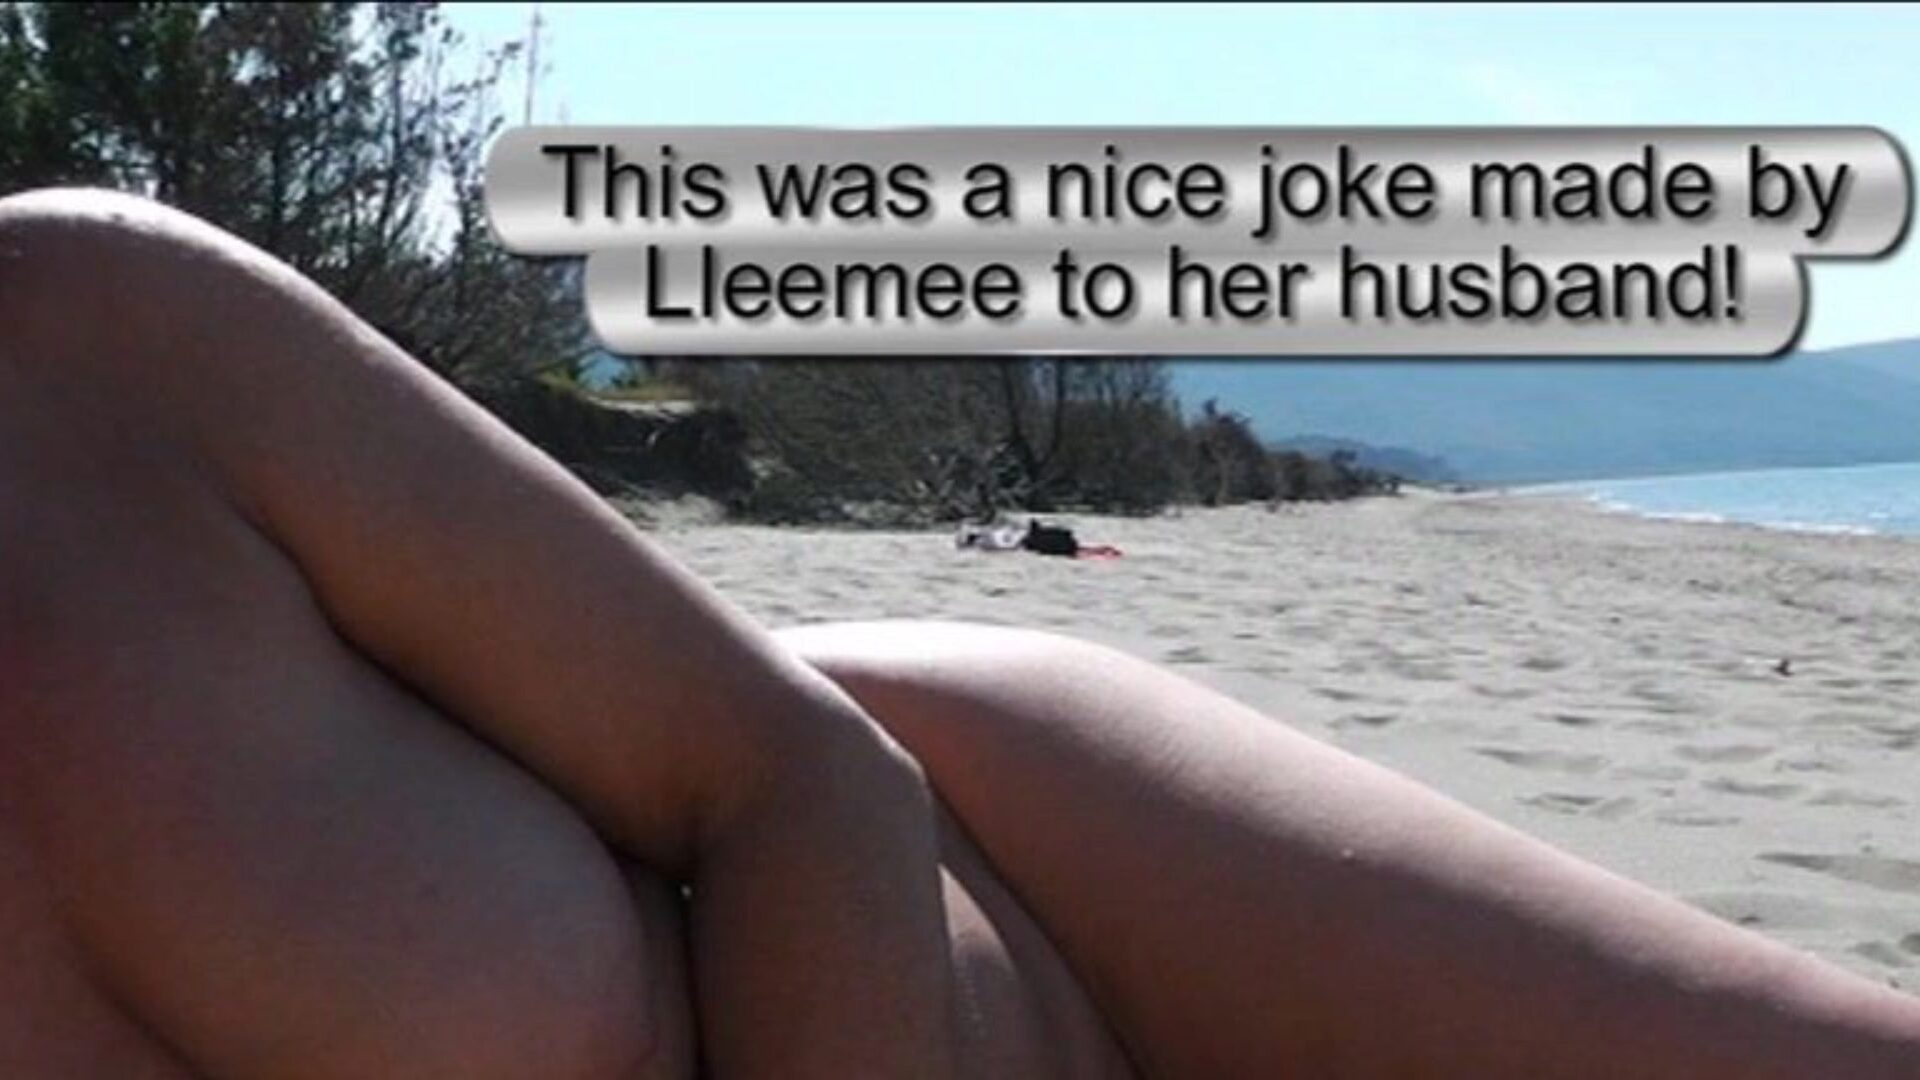 strandshow masturbatie - man die getuige is van een zeer waardevolle grap die Lleemee tegen haar man maakte